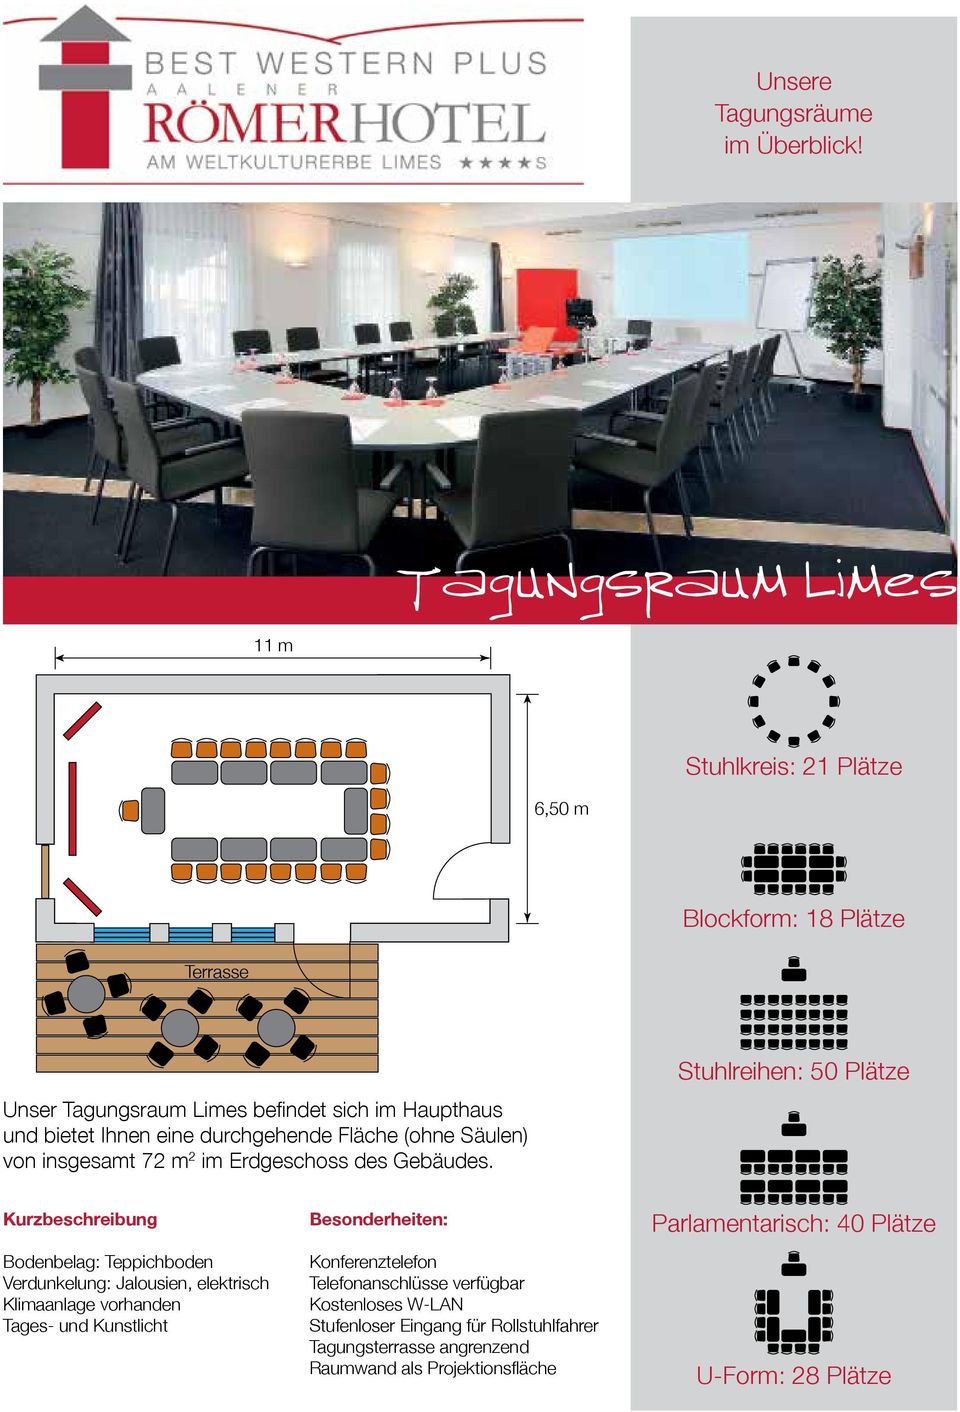 Stuhlreihen: 50 Plätze Bodenbelag: Teppichboden, elektrisch Tages- und Kunstlicht : Konferenztelefon Stufenloser Eingang